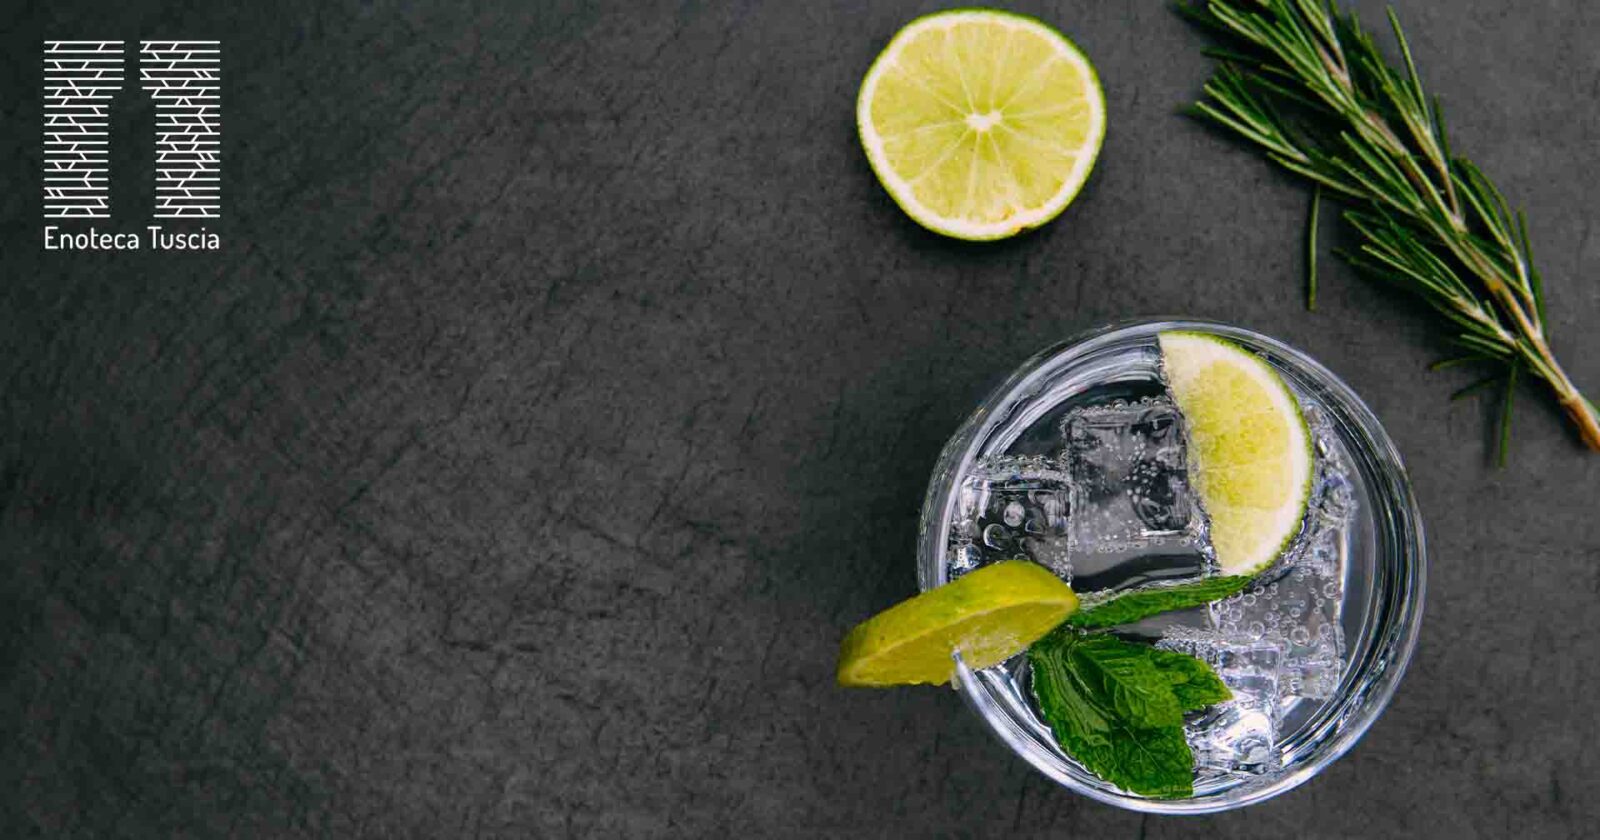 Il gin: trucchi e consigli per degustarlo al meglio – Enoteca Tuscia